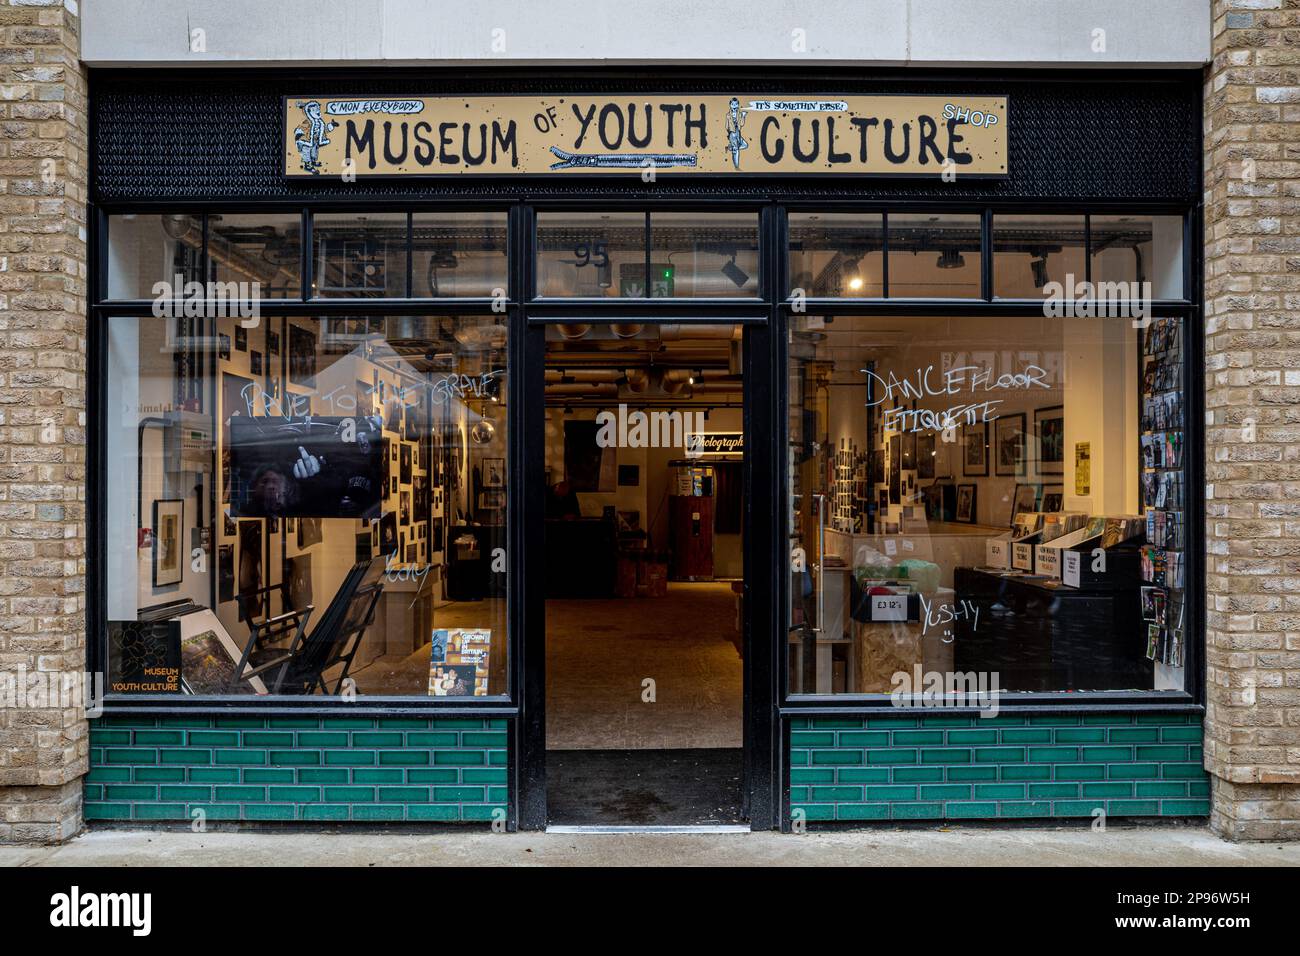 Museo de Cultura Juvenil Soho Londres. El Museo de la Cultura Juvenil está dedicado a la Cultura Juvenil y la vida adolescente en Gran Bretaña. 95 Berwick St Soho. Foto de stock